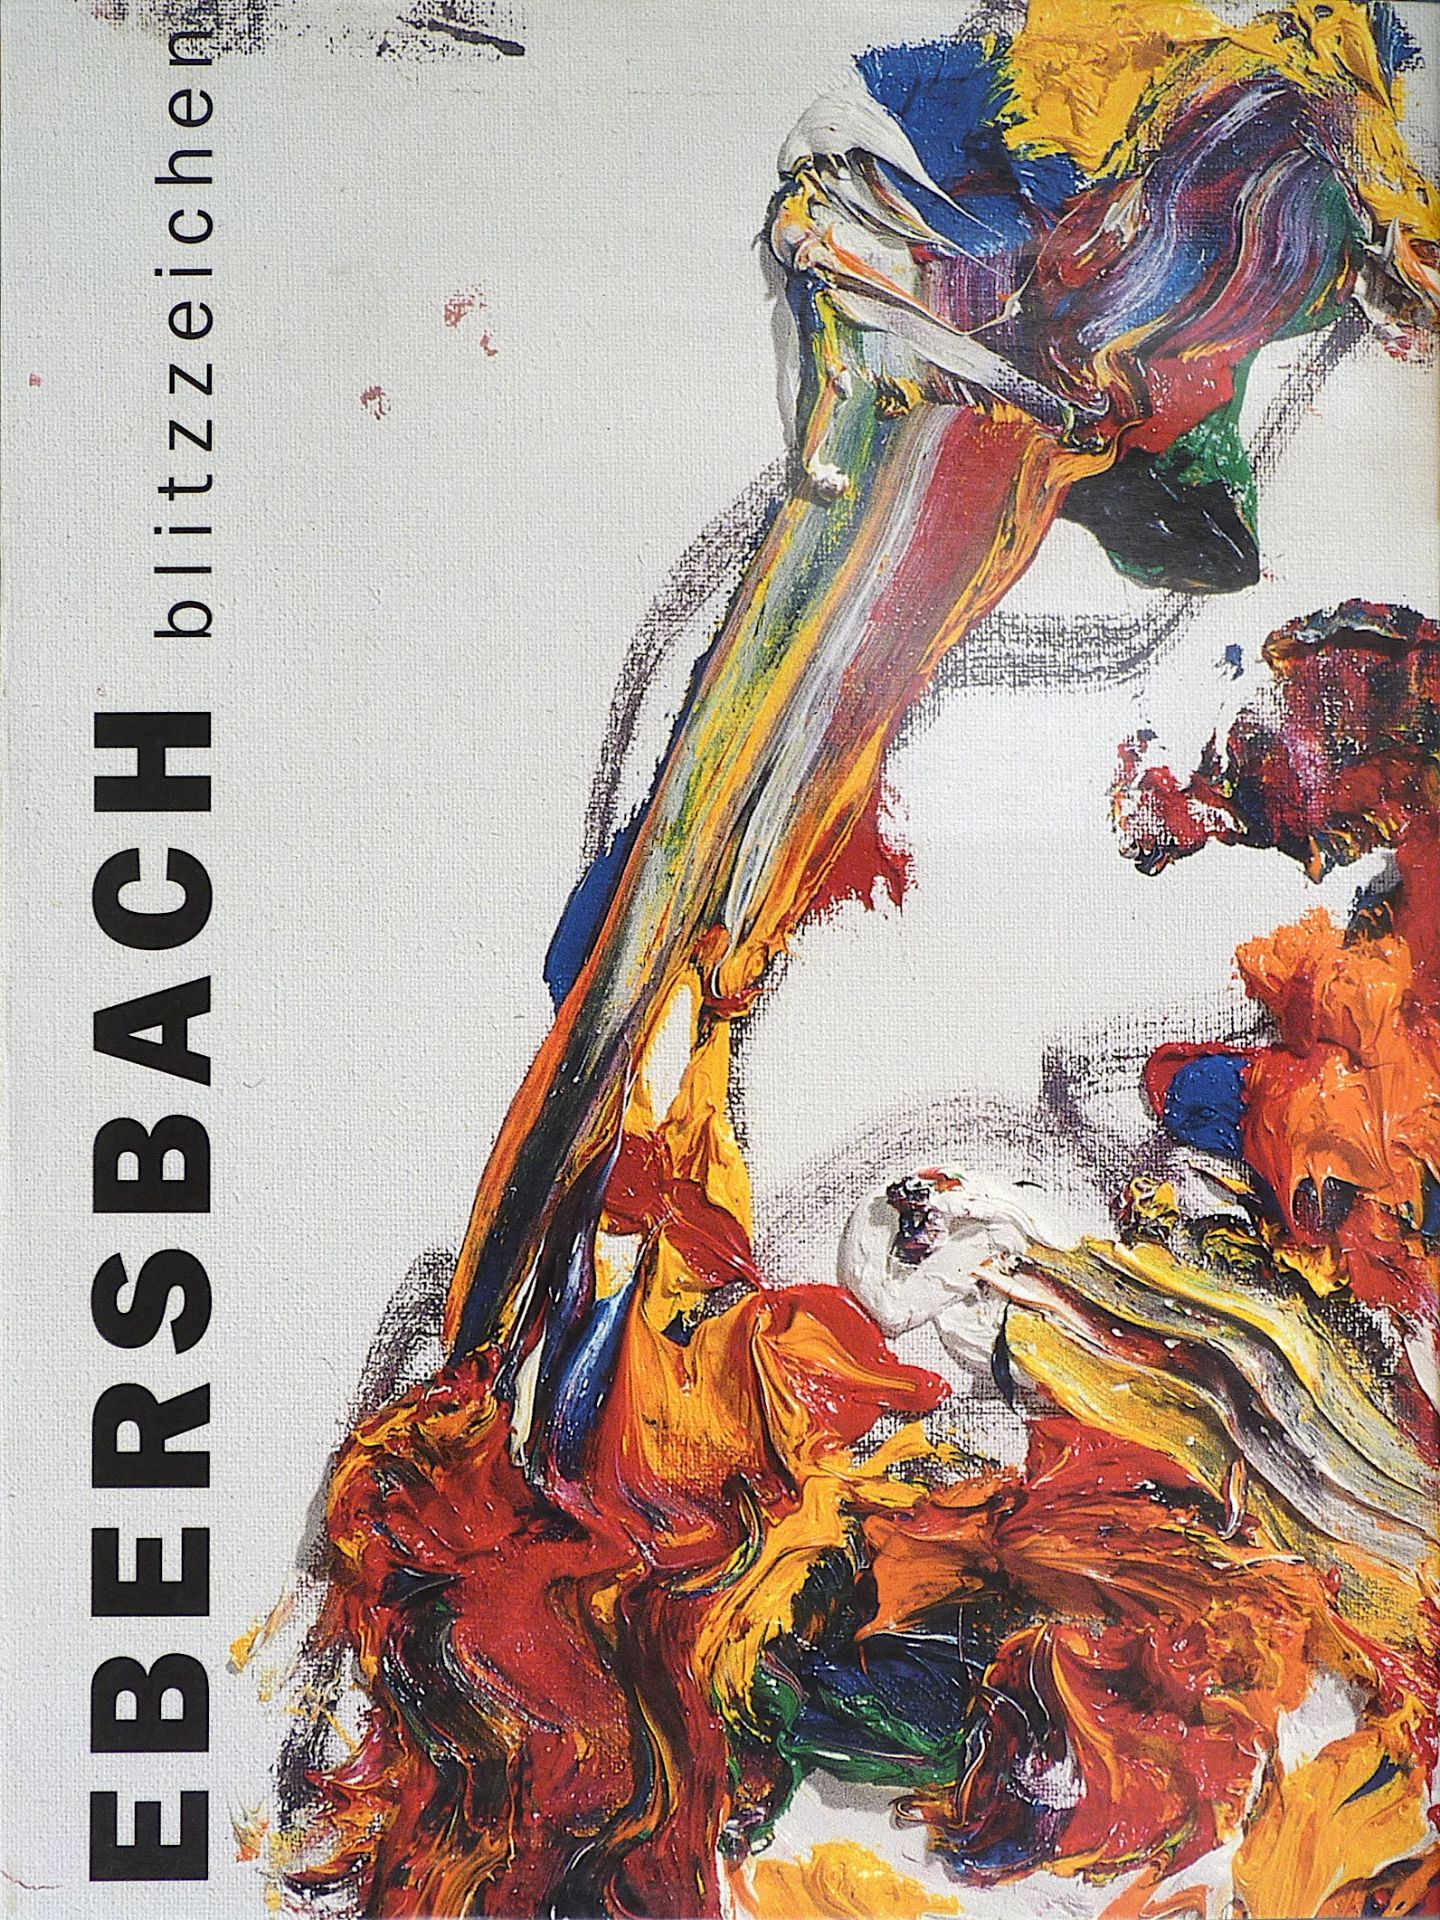 EBERSBACH, HARTWIG: "Blitzzeichen", 2002